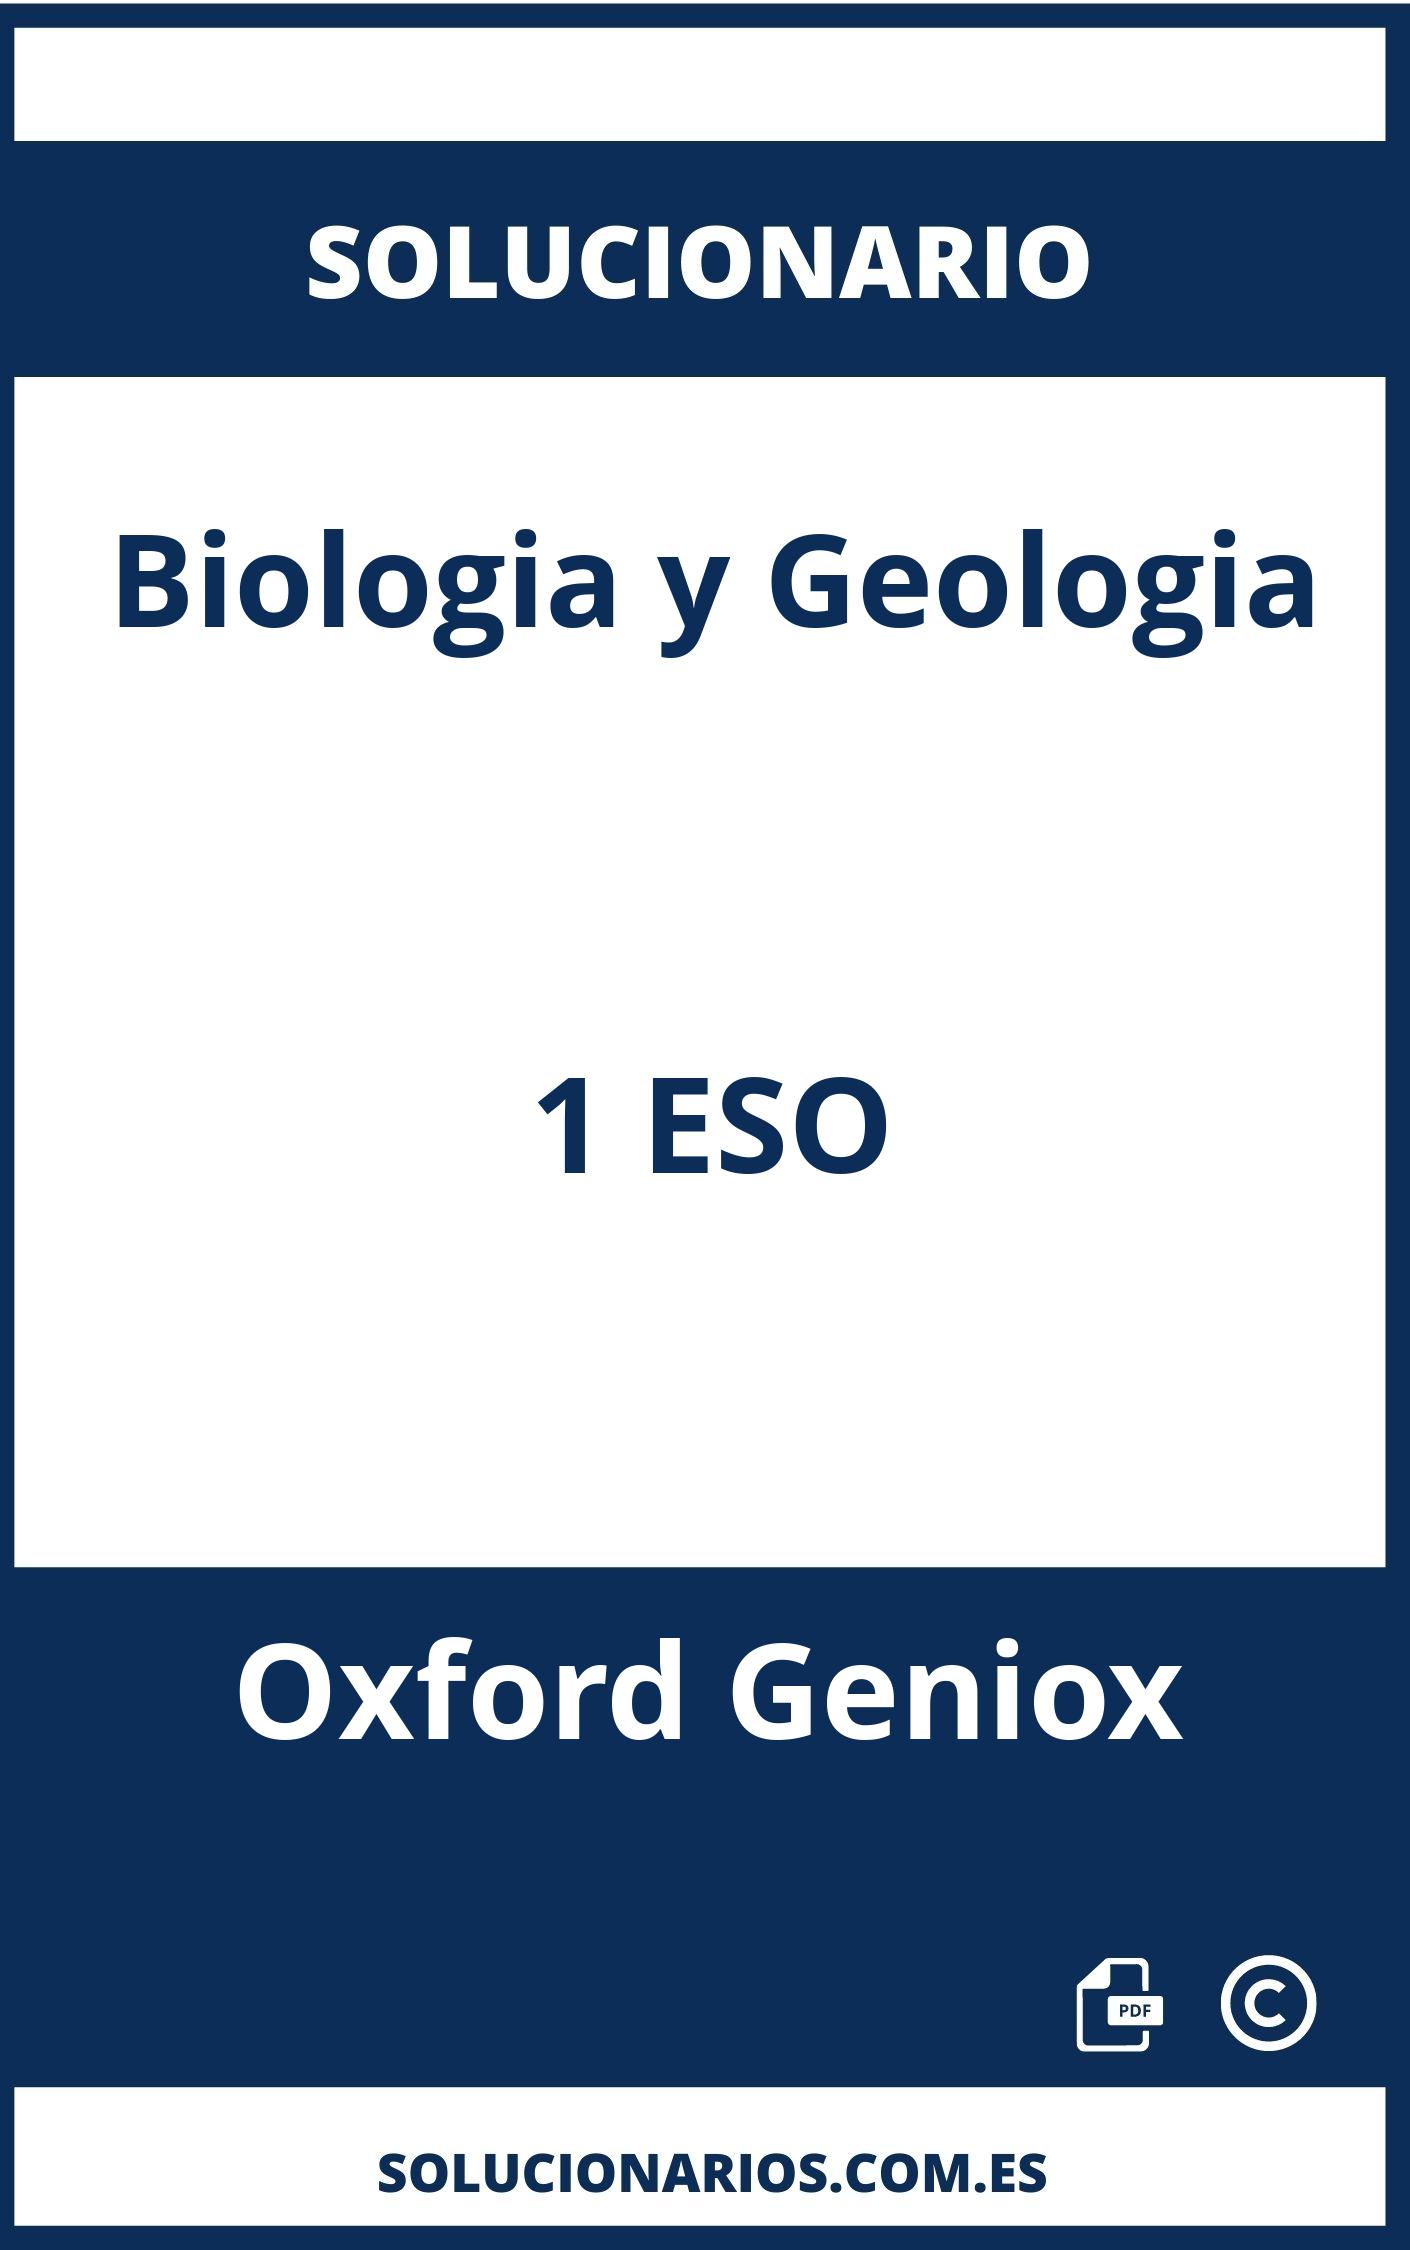 Solucionario Biologia y Geologia 1 ESO Oxford Geniox